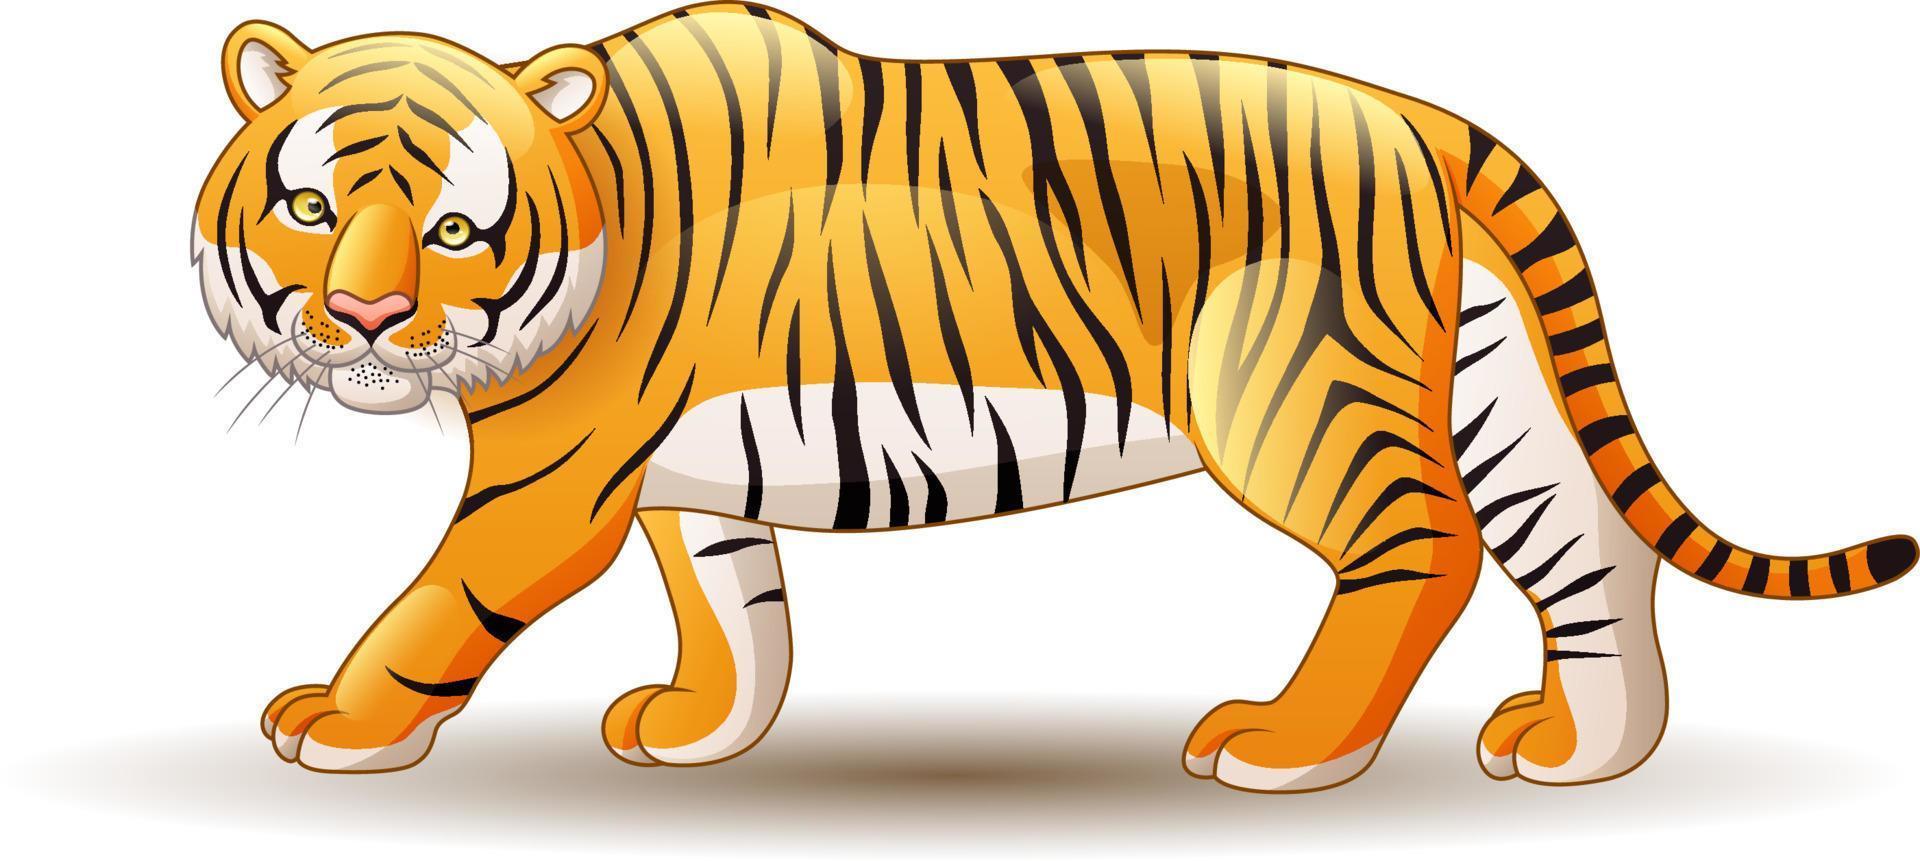 tigre de desenho animado isolado no fundo branco vetor